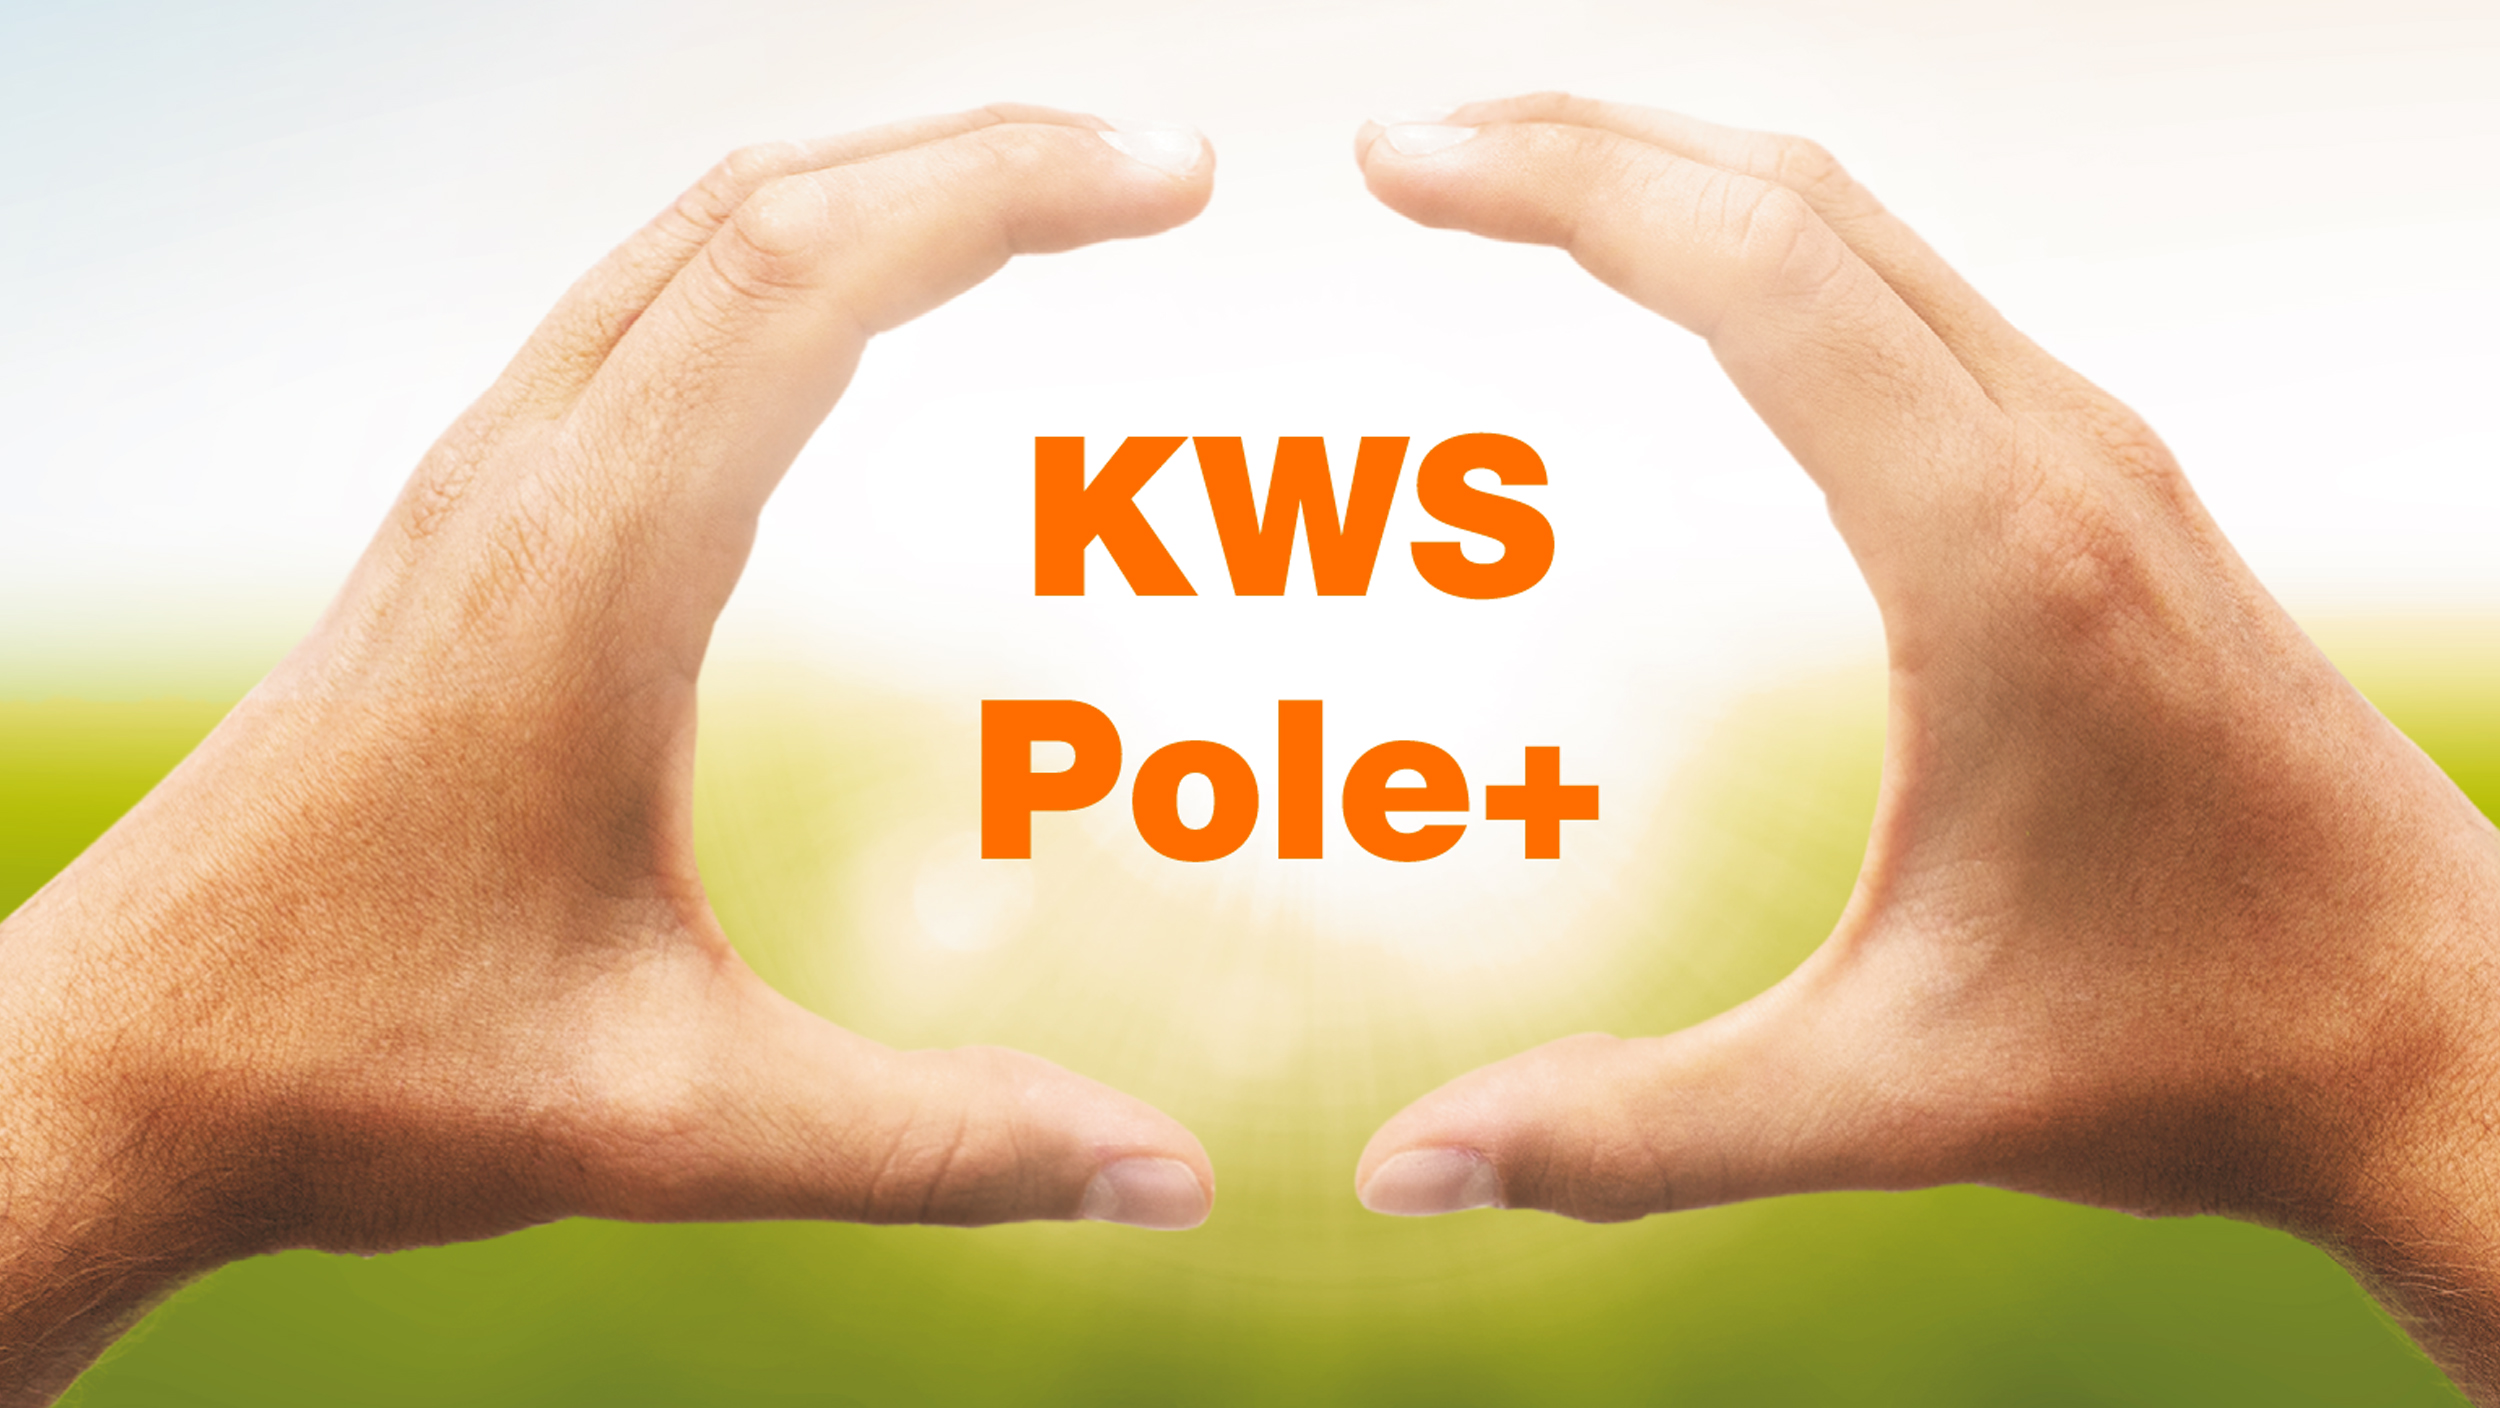 kws-pole-plus.jpg